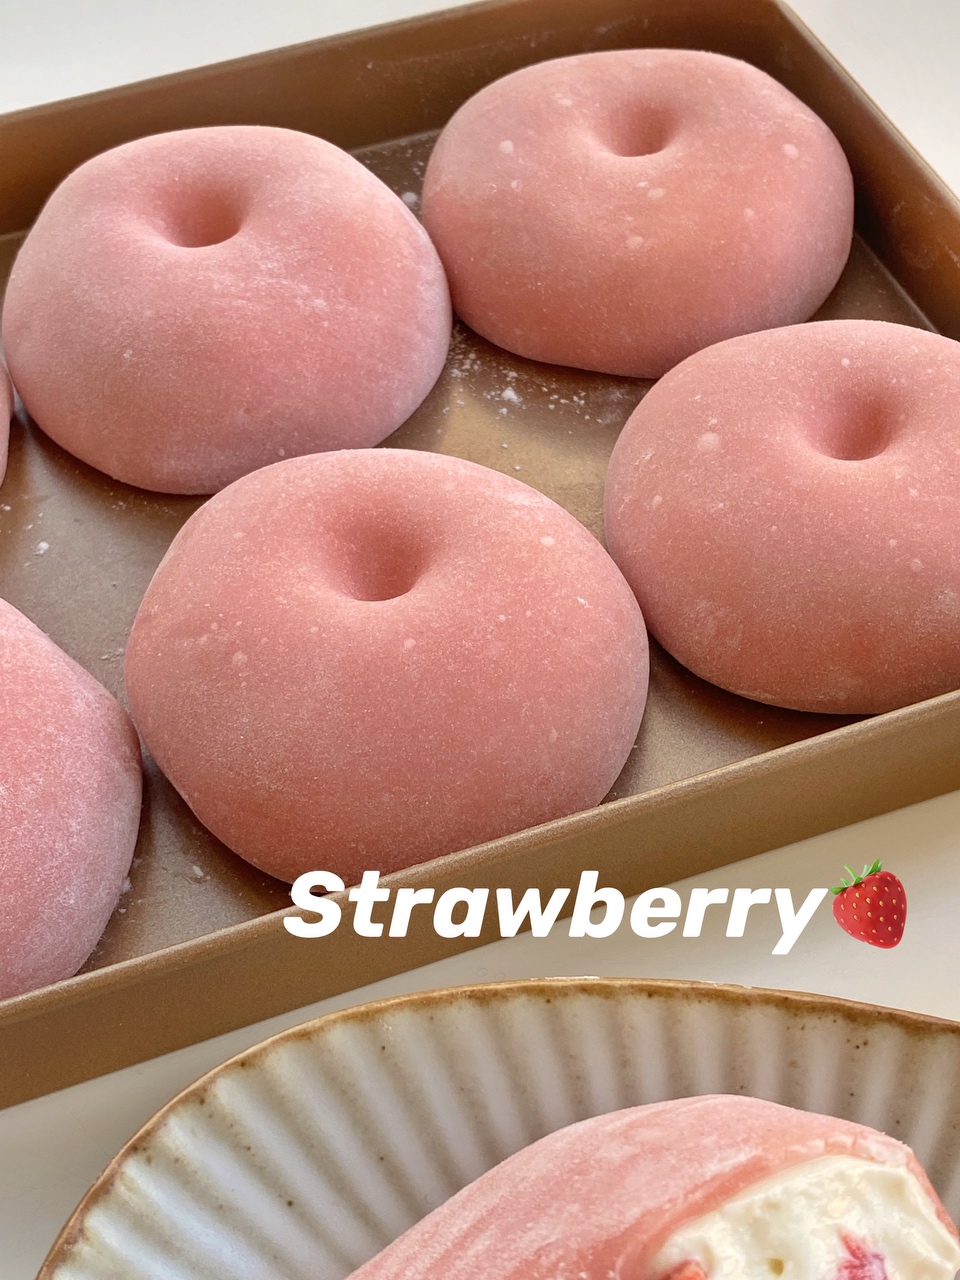 知否同款草莓软酪🍓酸酸甜甜软糯拉丝